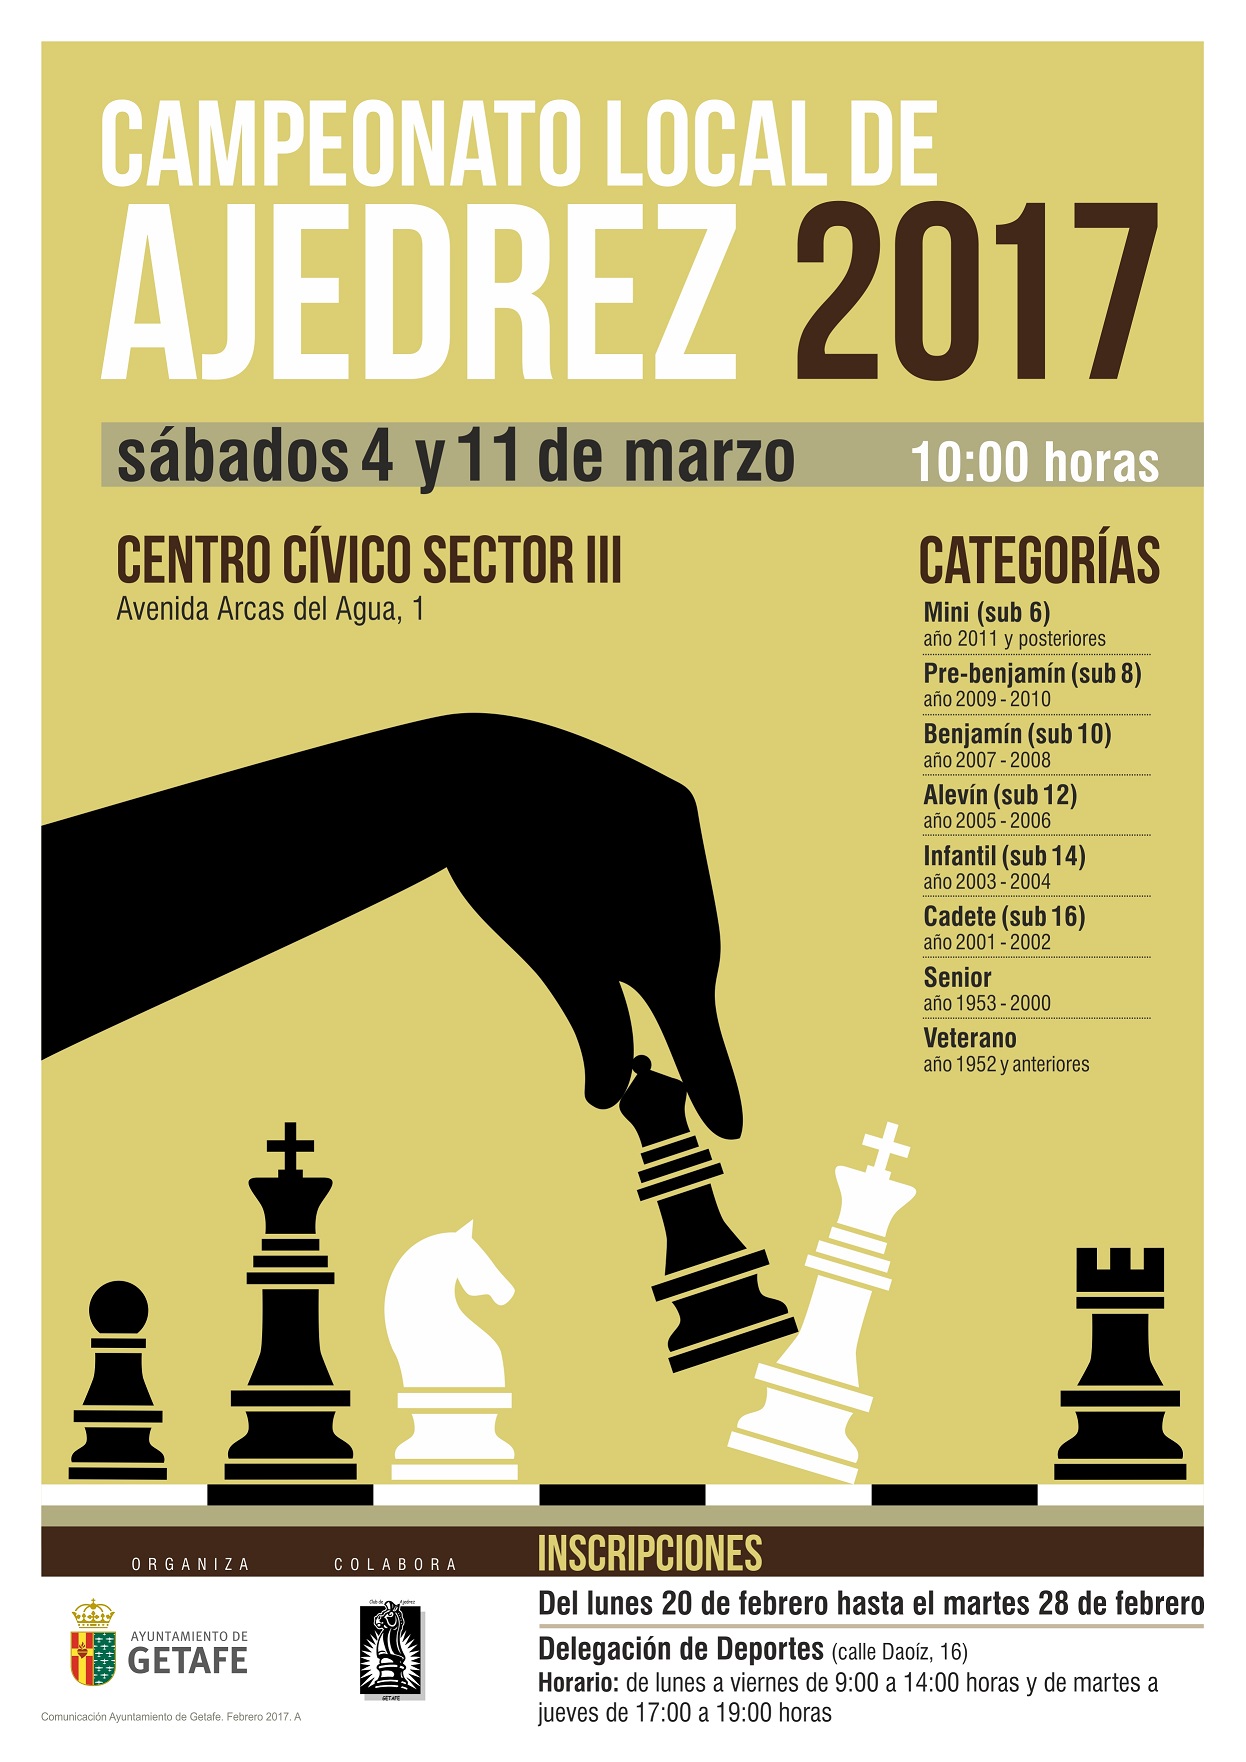 Hoy se abre el plazo de inscripción en Getafe para el Campeonato Local de Ajedrez 2017